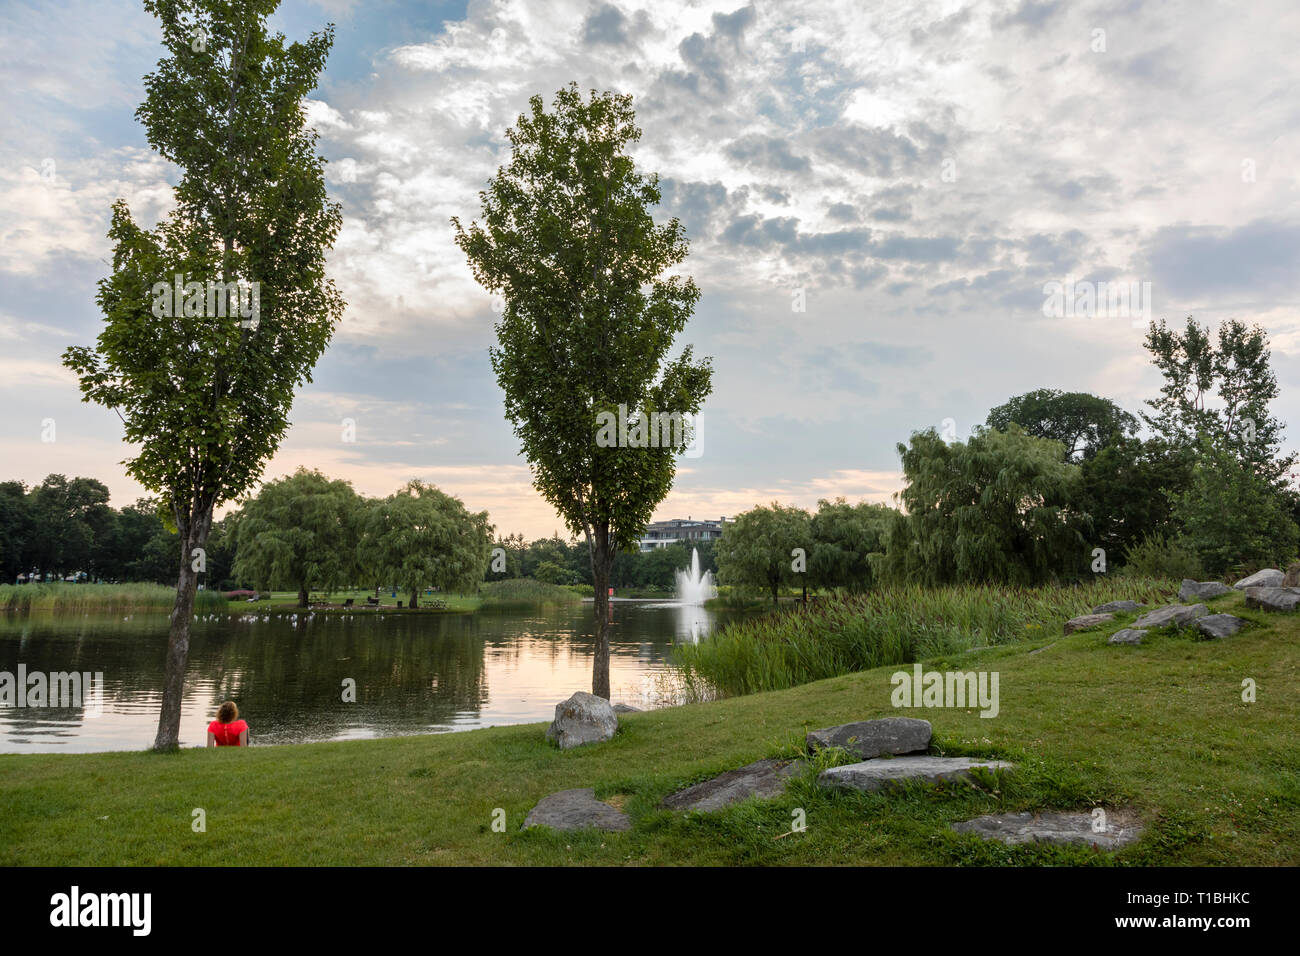 Eine Person, die eine ruhige Szene mit Bäumen, einem Teich und Springbrunnen. Stockfoto